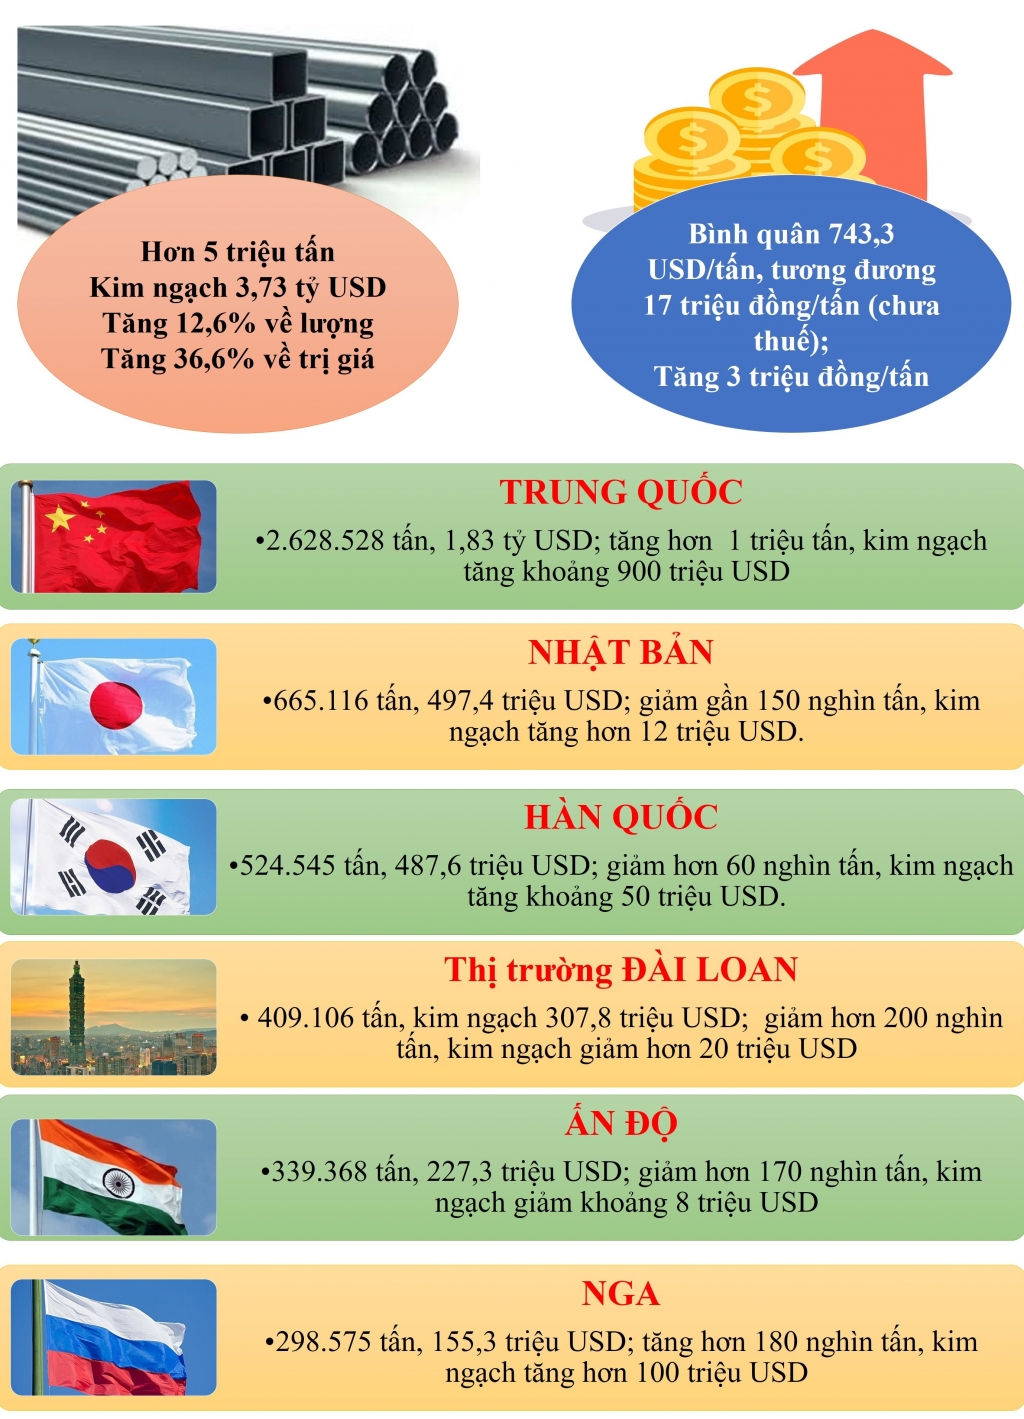 Infographics: Sắt thép nhập tăng 3 triệu đồng/tấn, thị trường Trung Quốc tăng mạnh